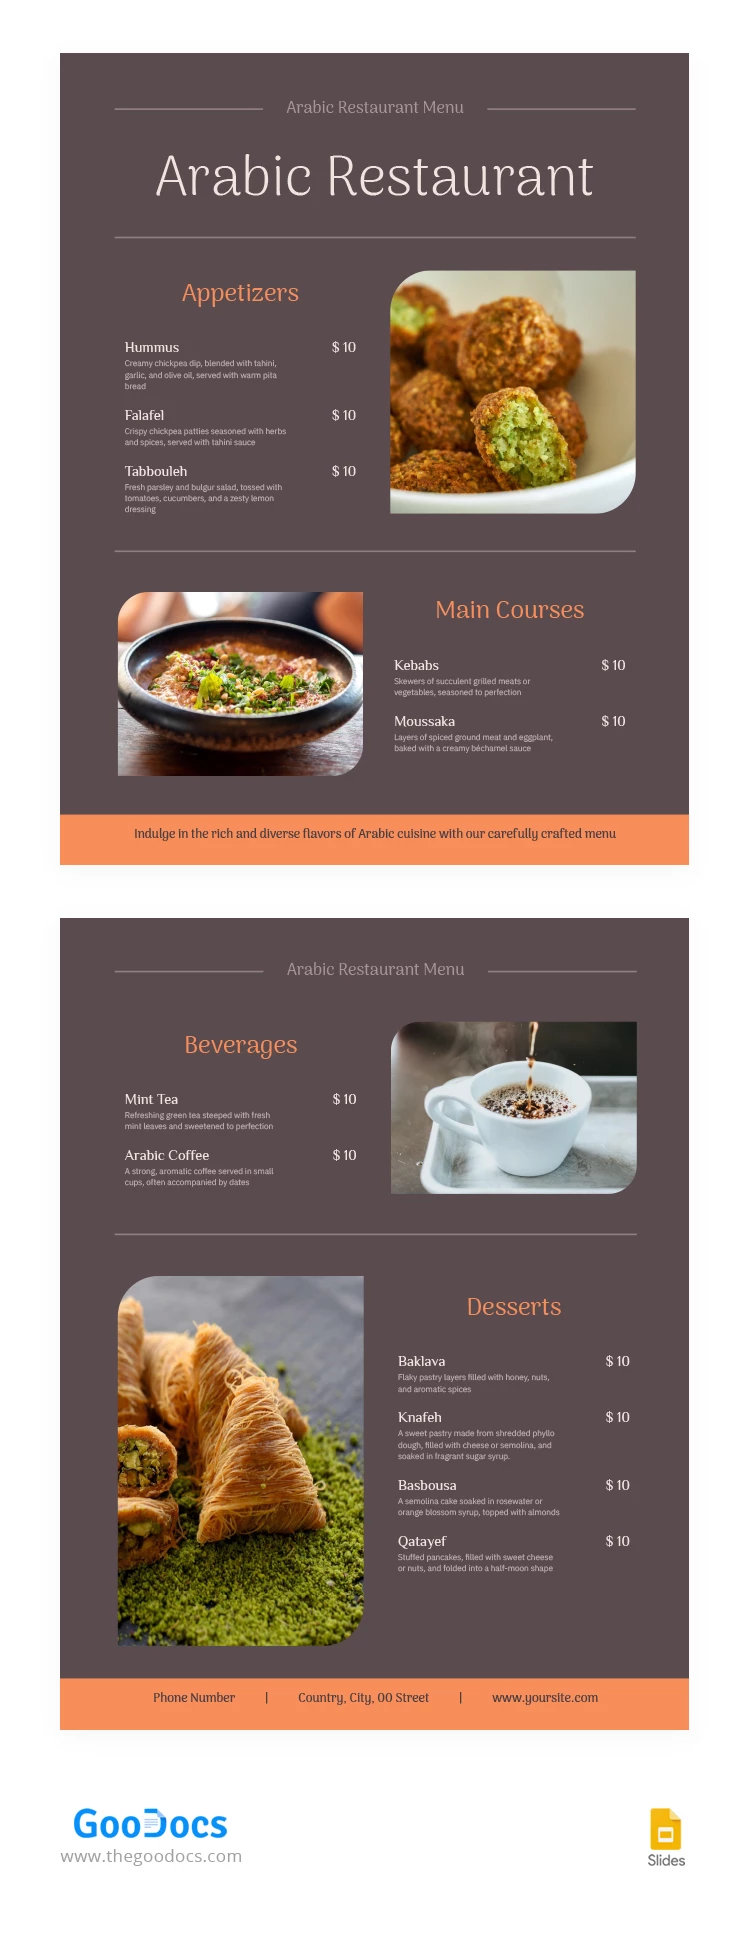 Menu de Restaurante Árabe - free Google Docs Template - 10067228